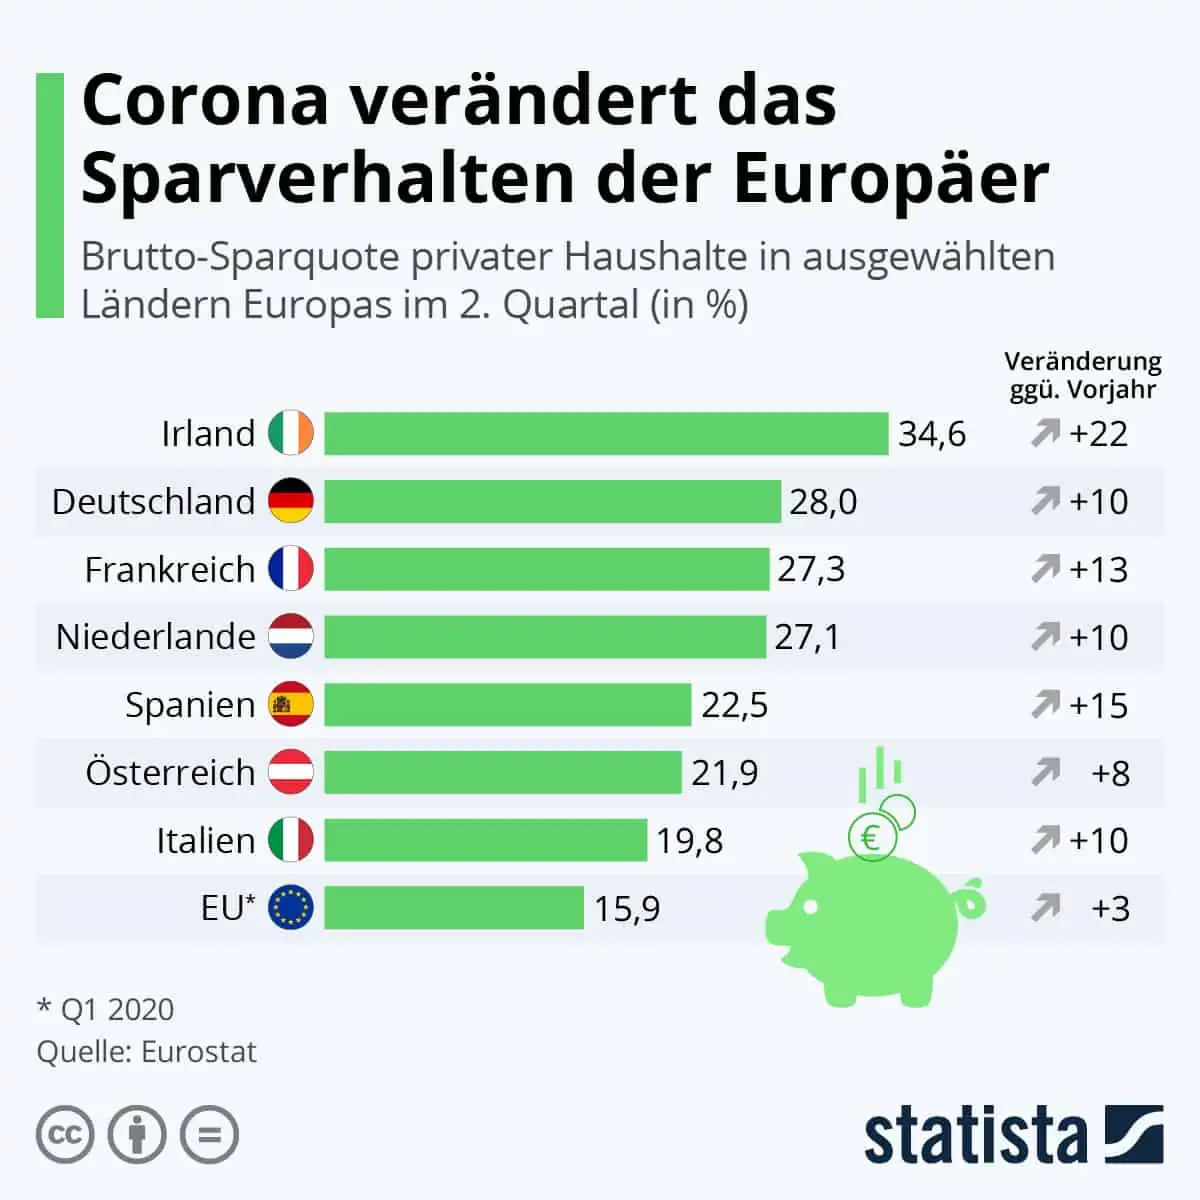 Corona verändert das Sparverhalten der Europäer